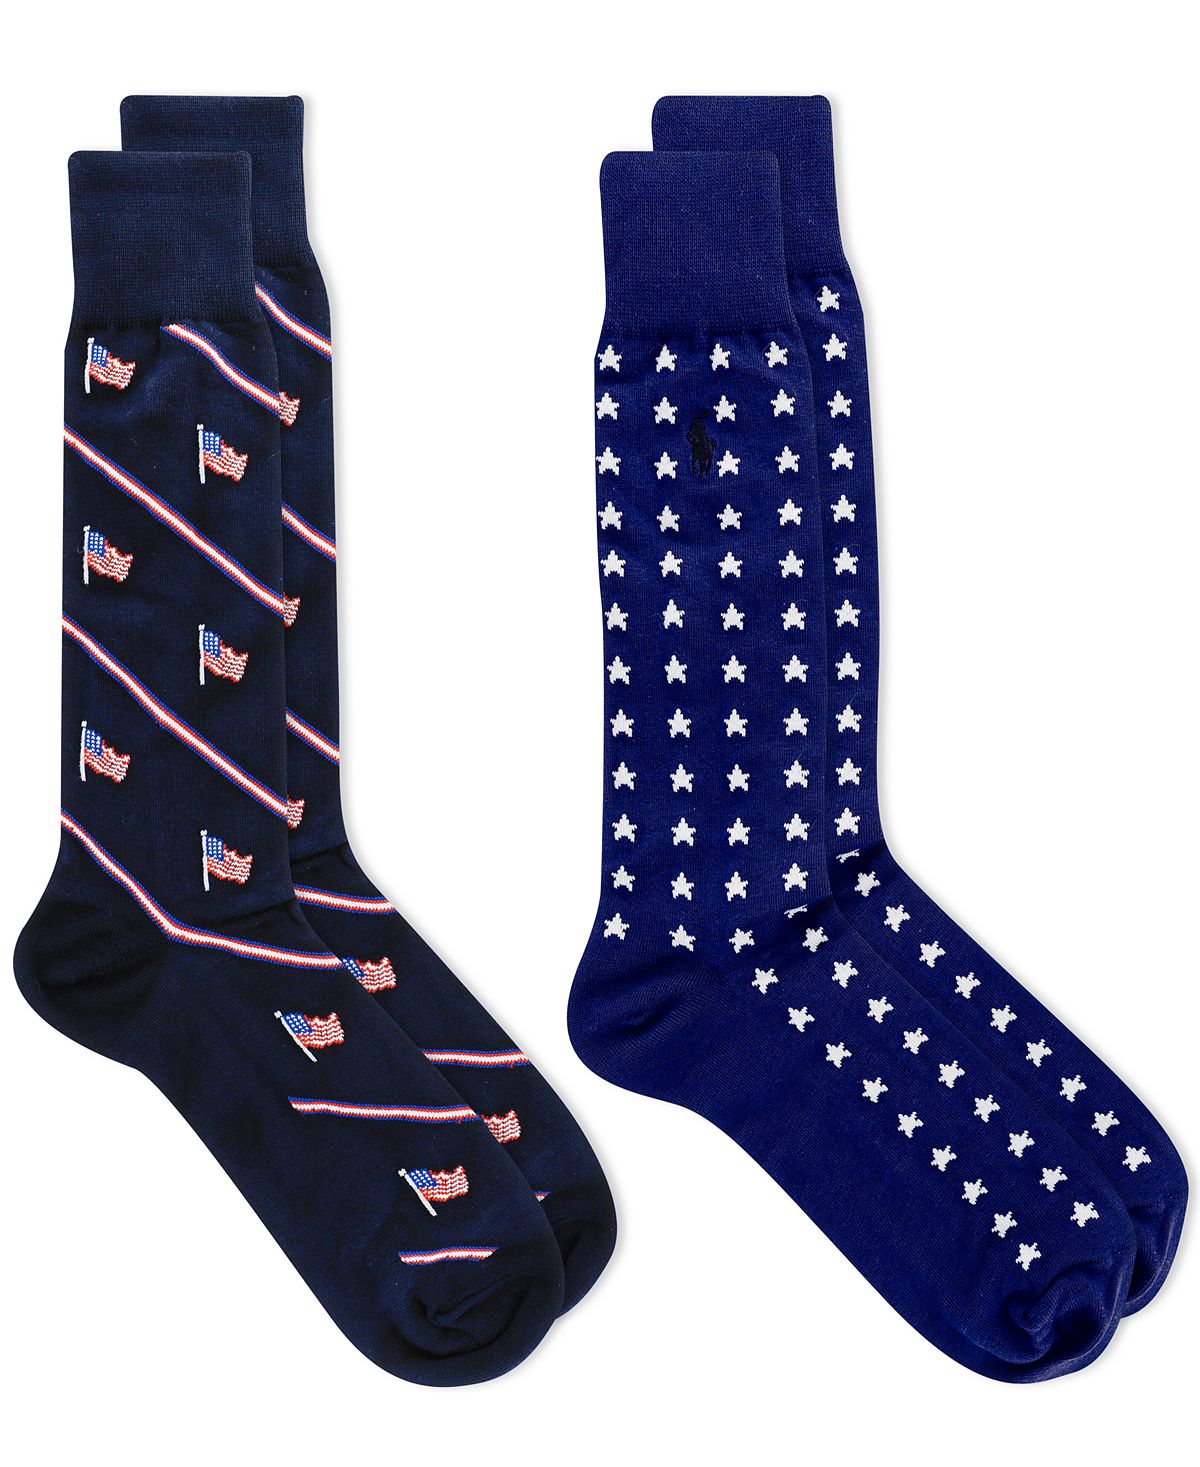 Polo Ralph Lauren 2-pk. Stars & Stripes Dress Socks Navy